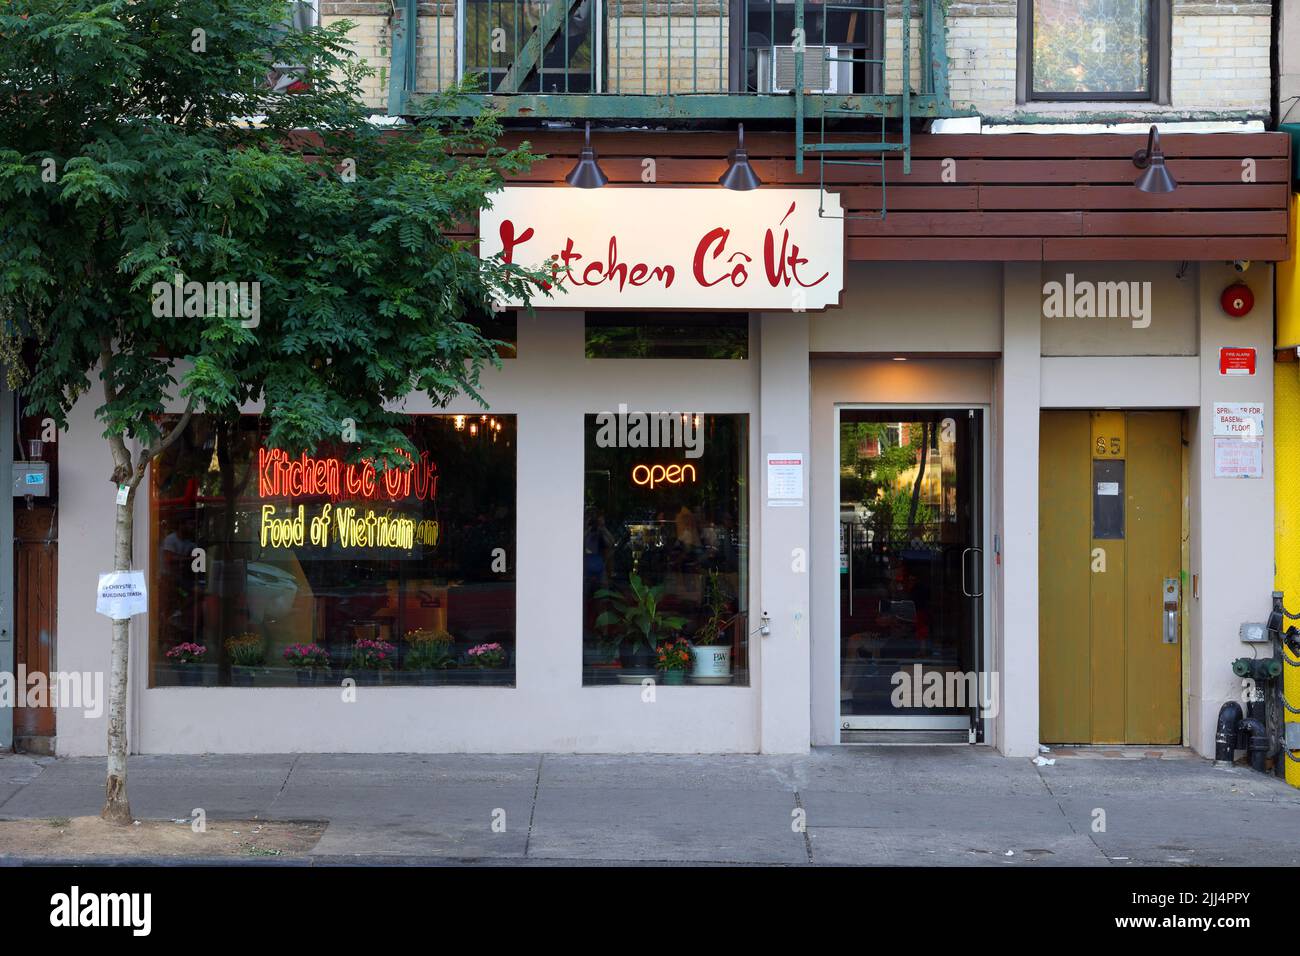 Kitchen Co UT, 85 Chrystie St, New York, NY. Façade extérieure du restaurant vietnamien dans le quartier chinois de Manhattan. Cuisine Út. Banque D'Images